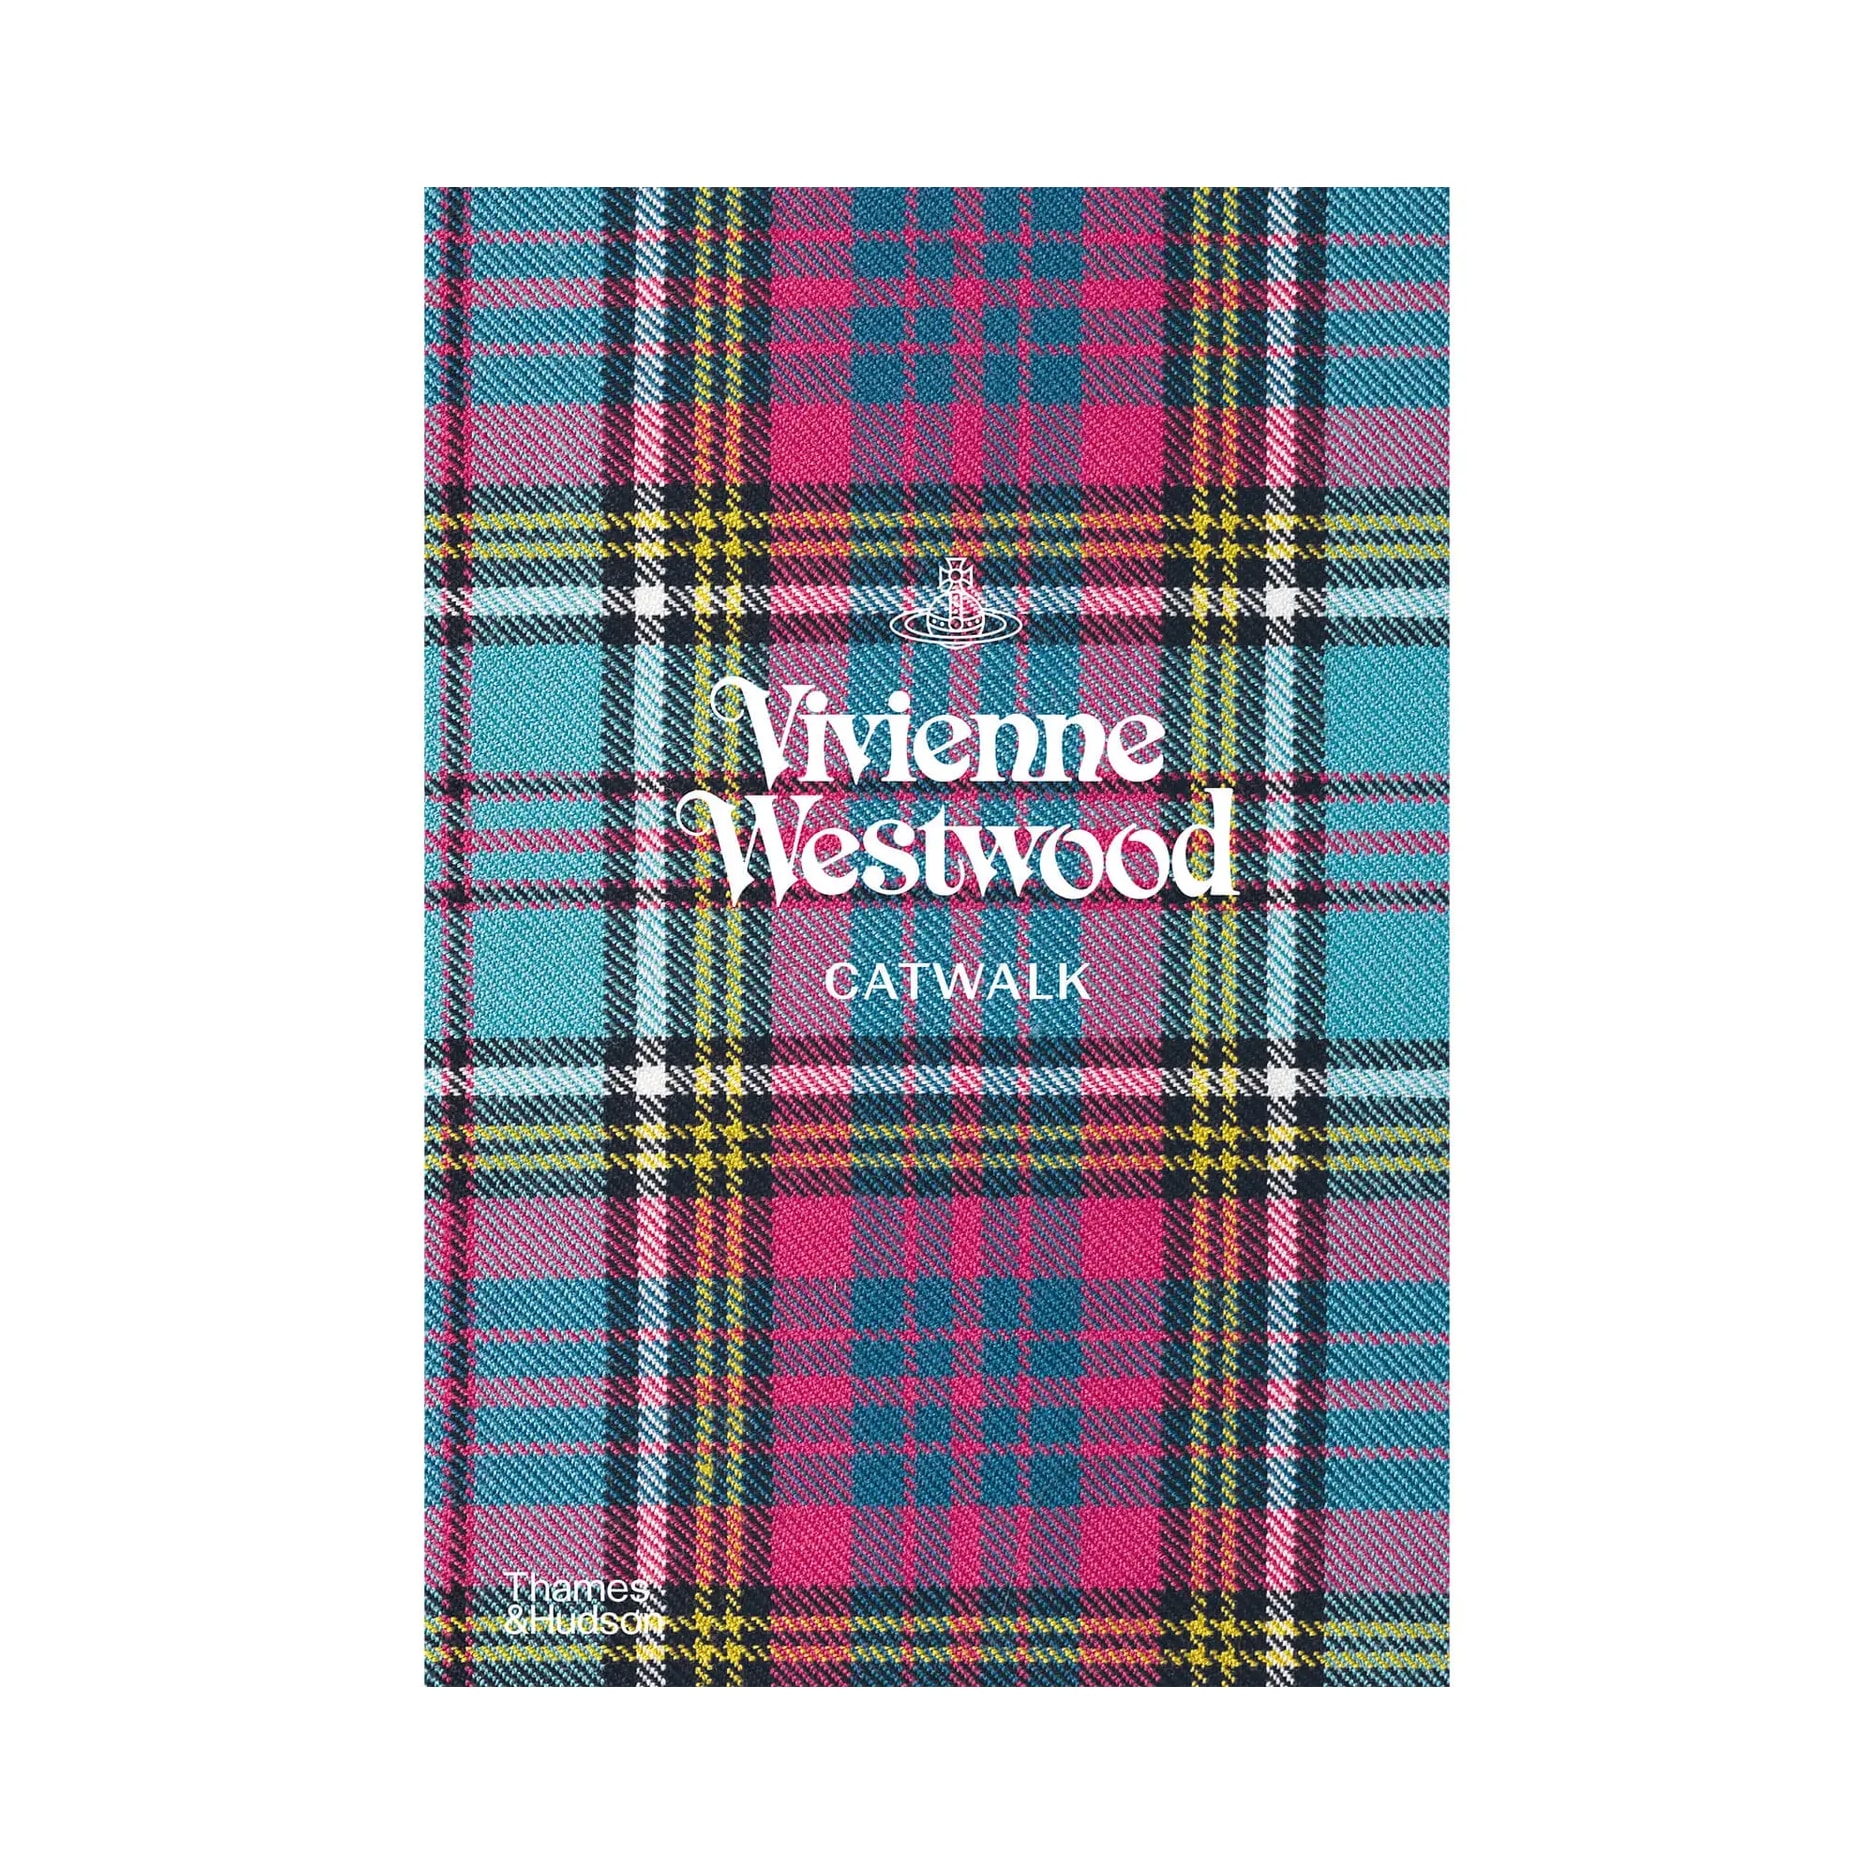 Thames and Hudson Ltd Vivienne Westwood Catwalk - The Complete